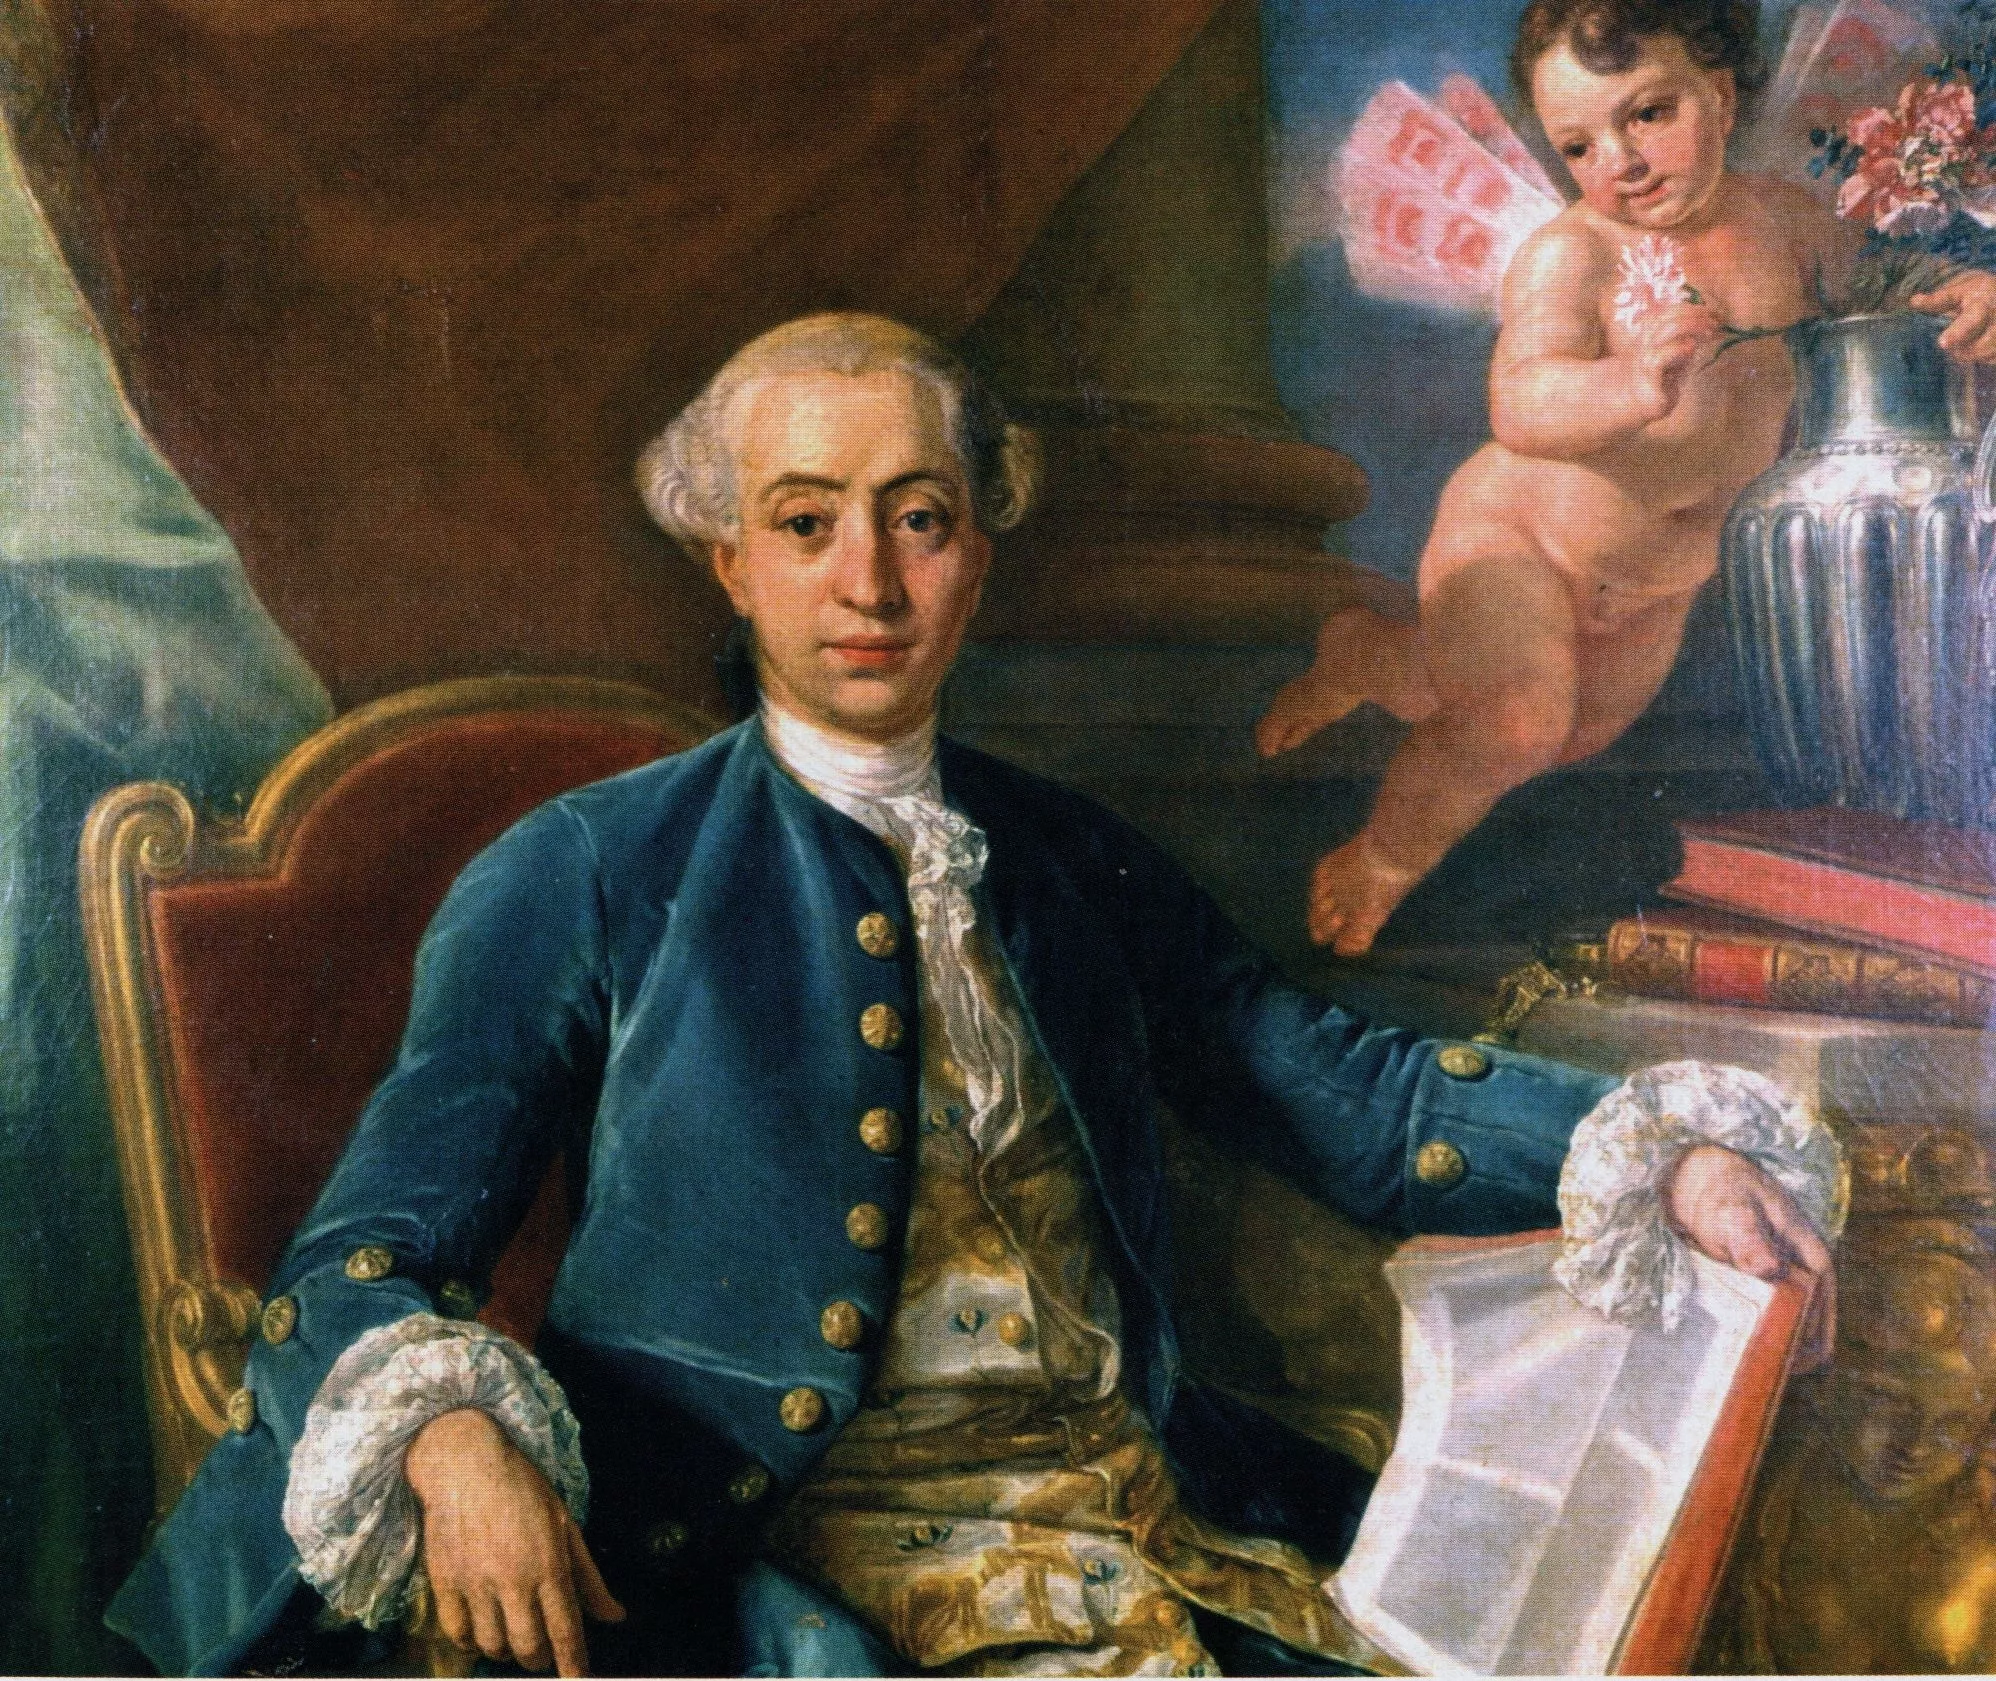 Retrar de Giacomo Casanova, d'Anton Raphael Mengs (1760)